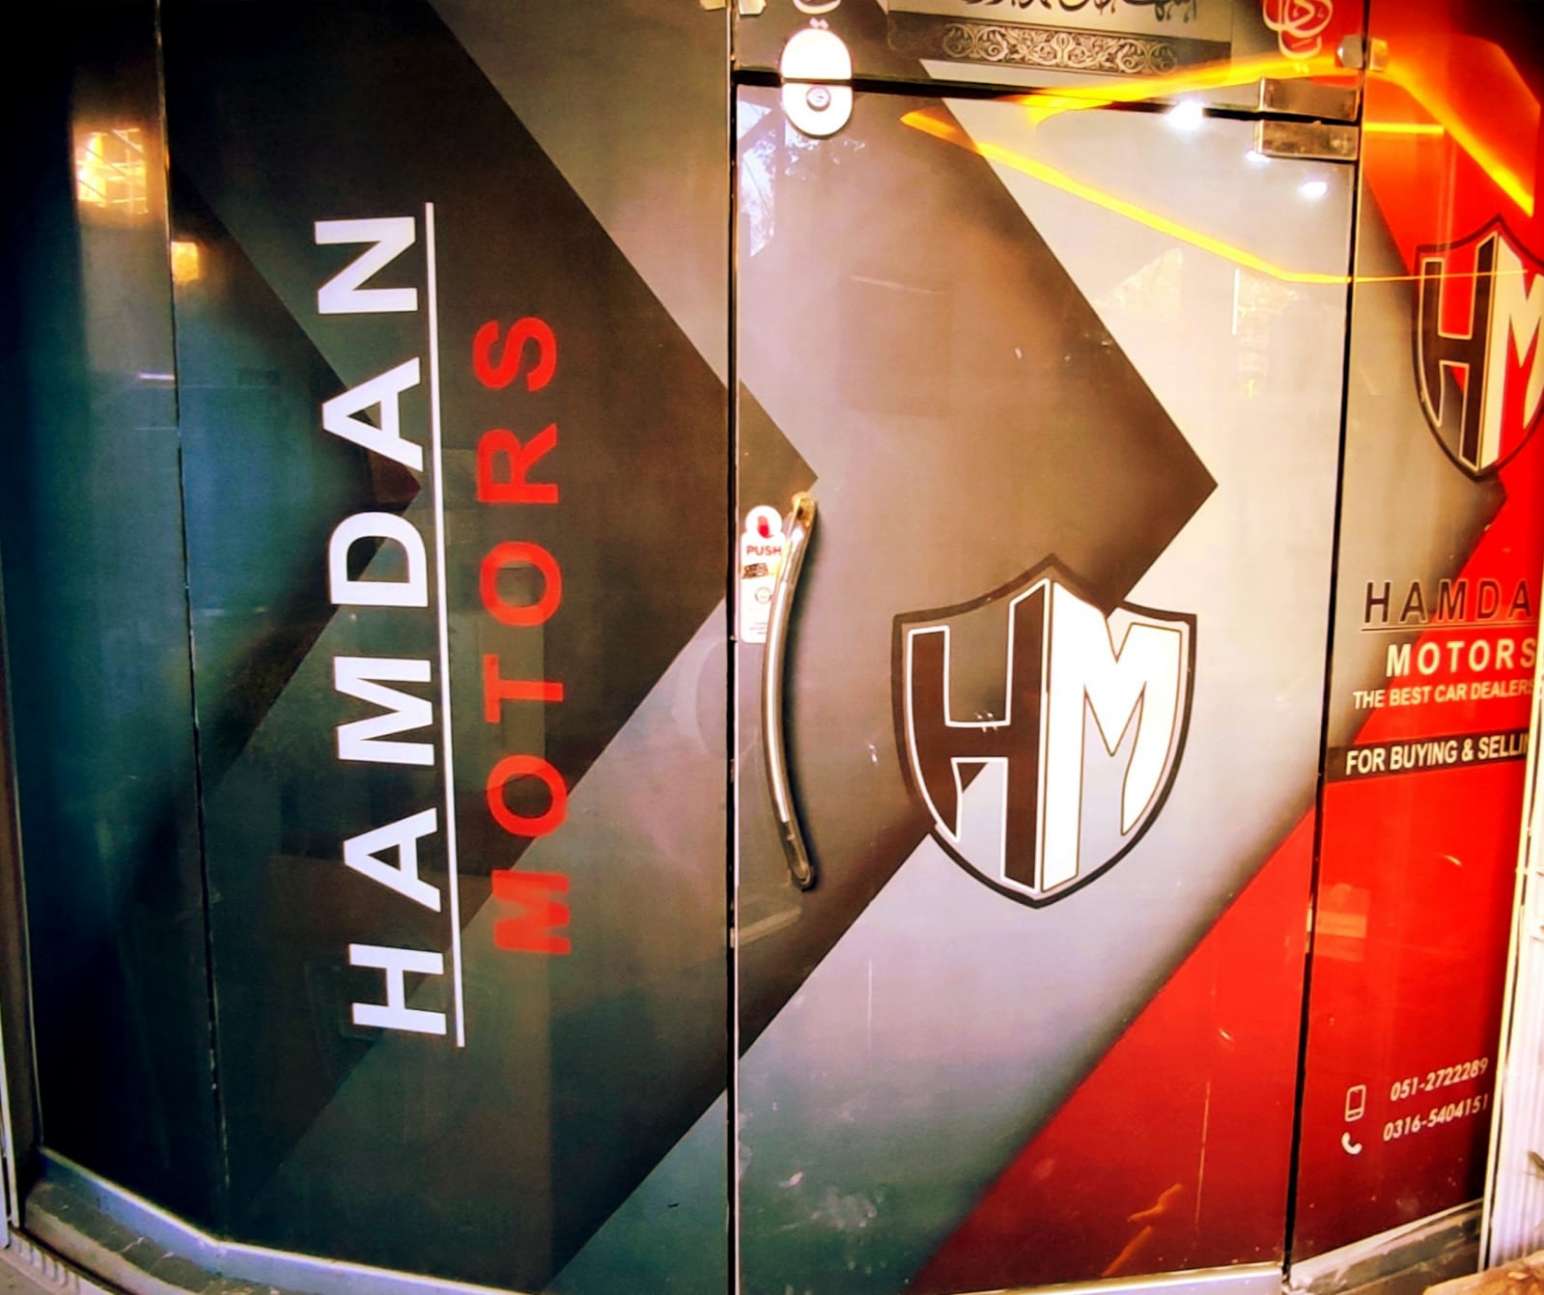 Hamdan Motors